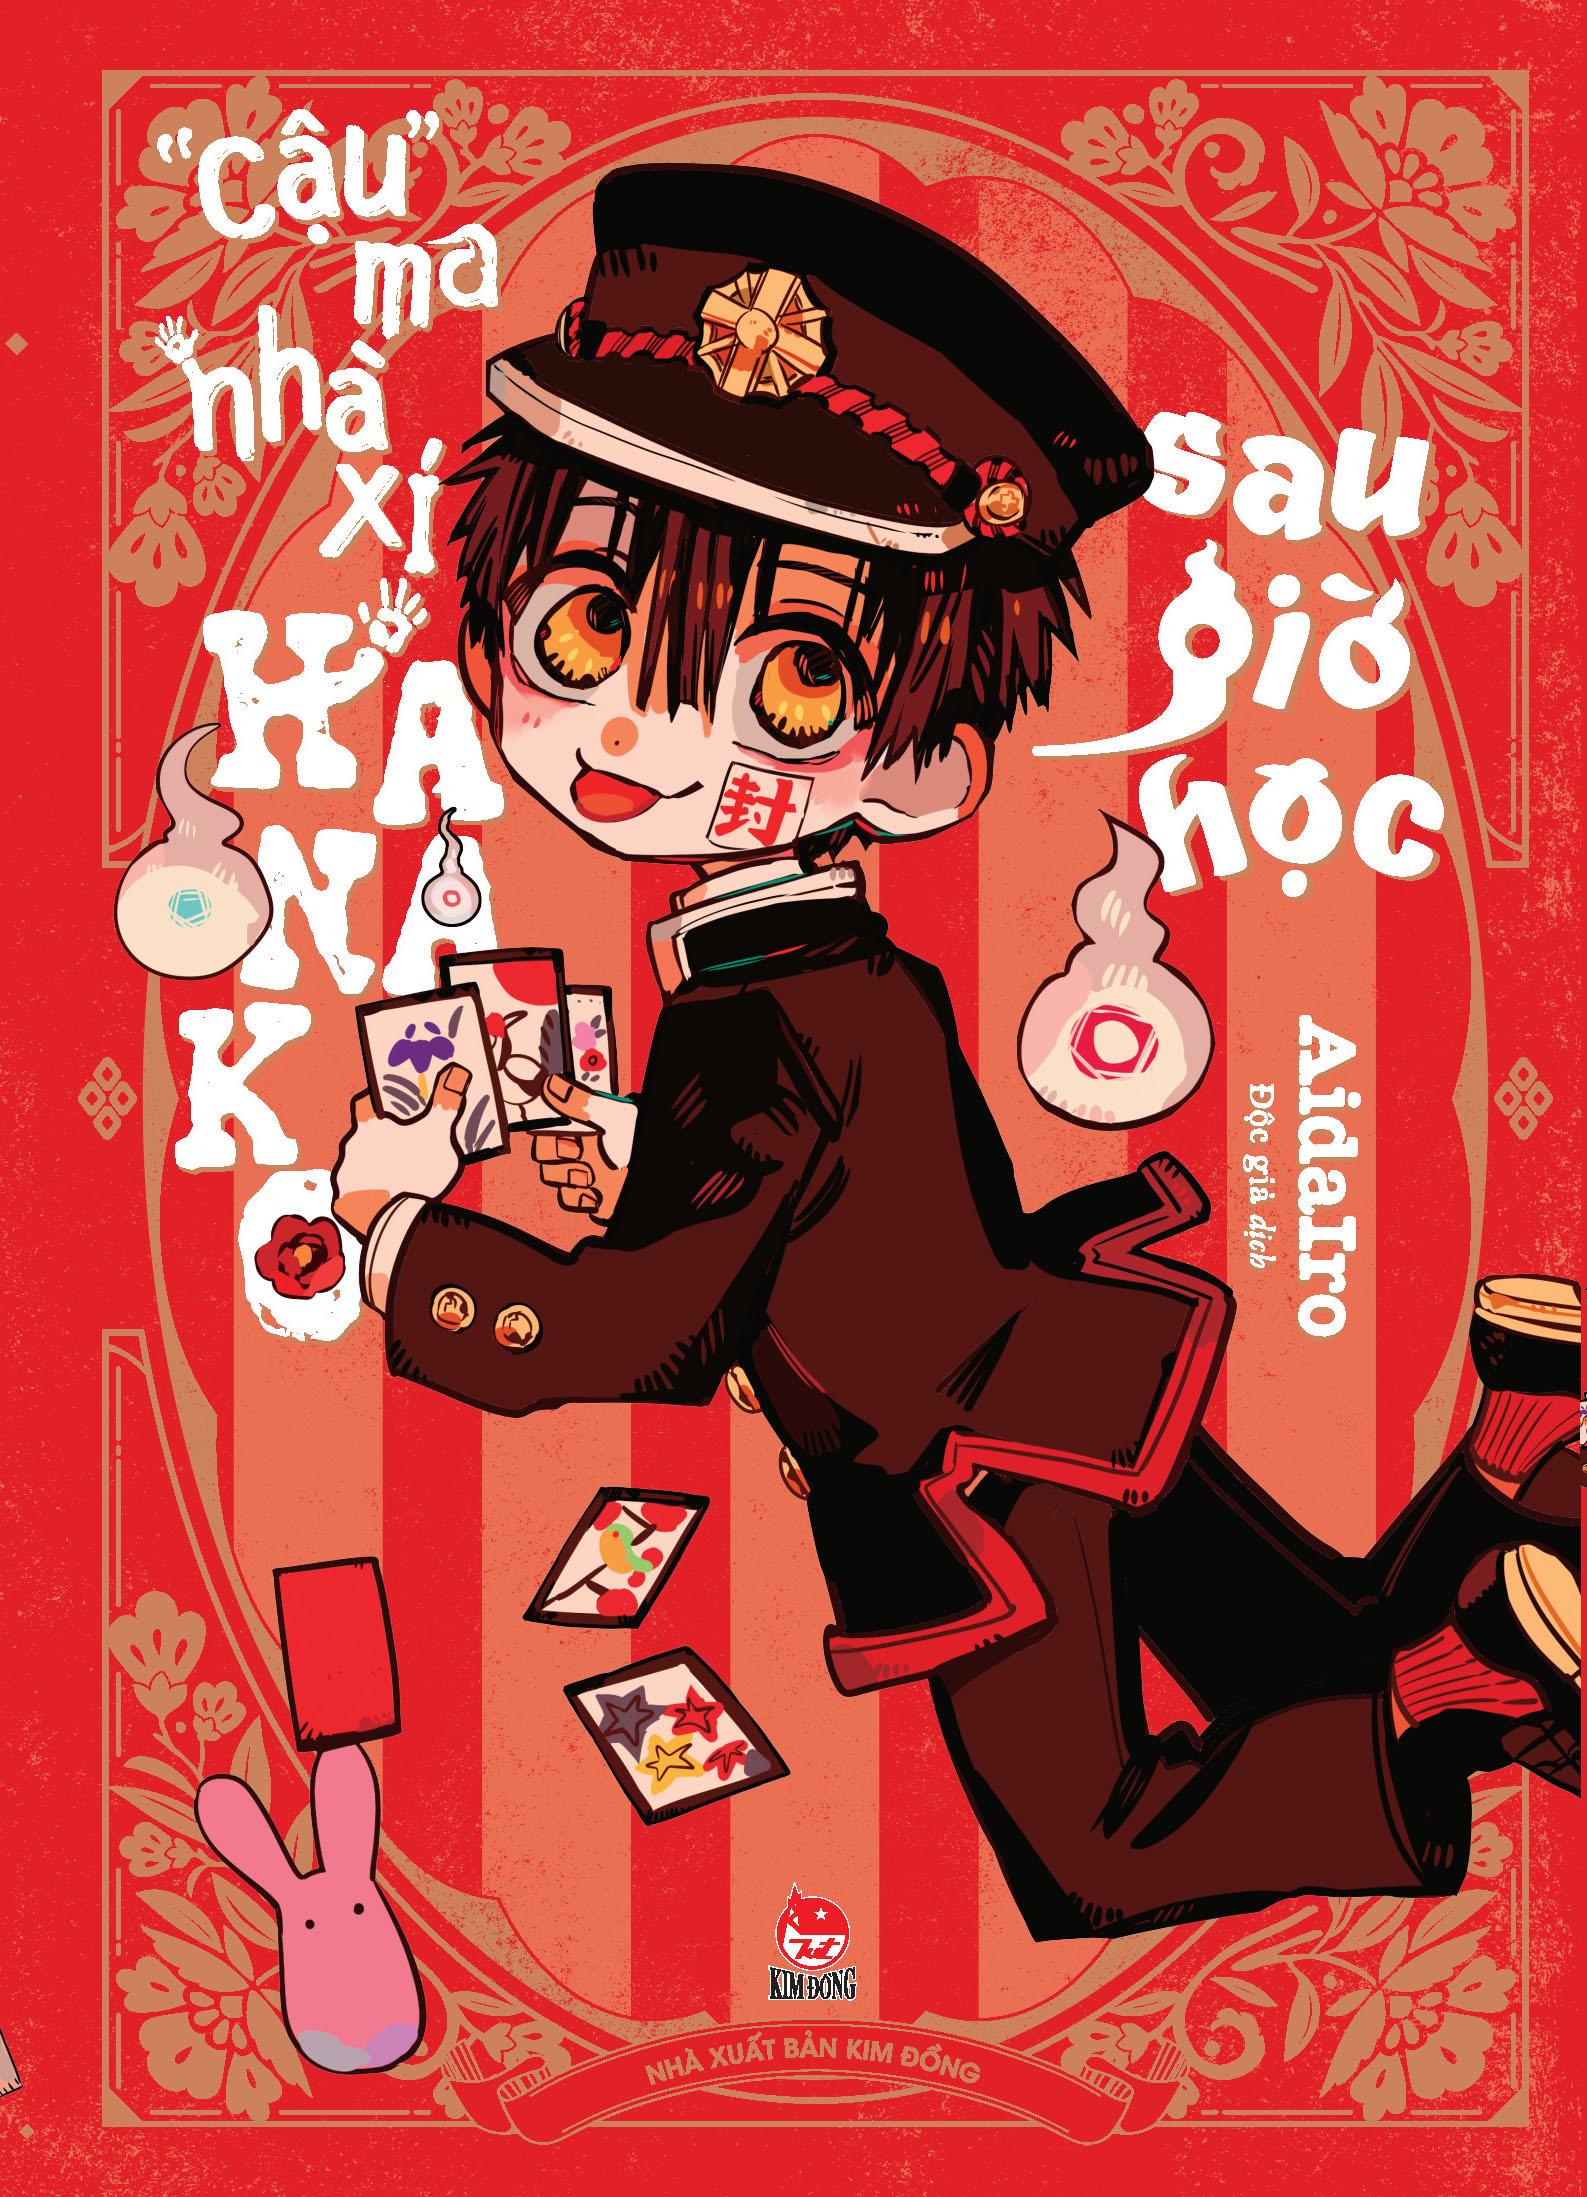 "Cậu" Ma Nhà Xí Hanako - Sau Giờ Học - Tặng Kèm Bảng Sticker